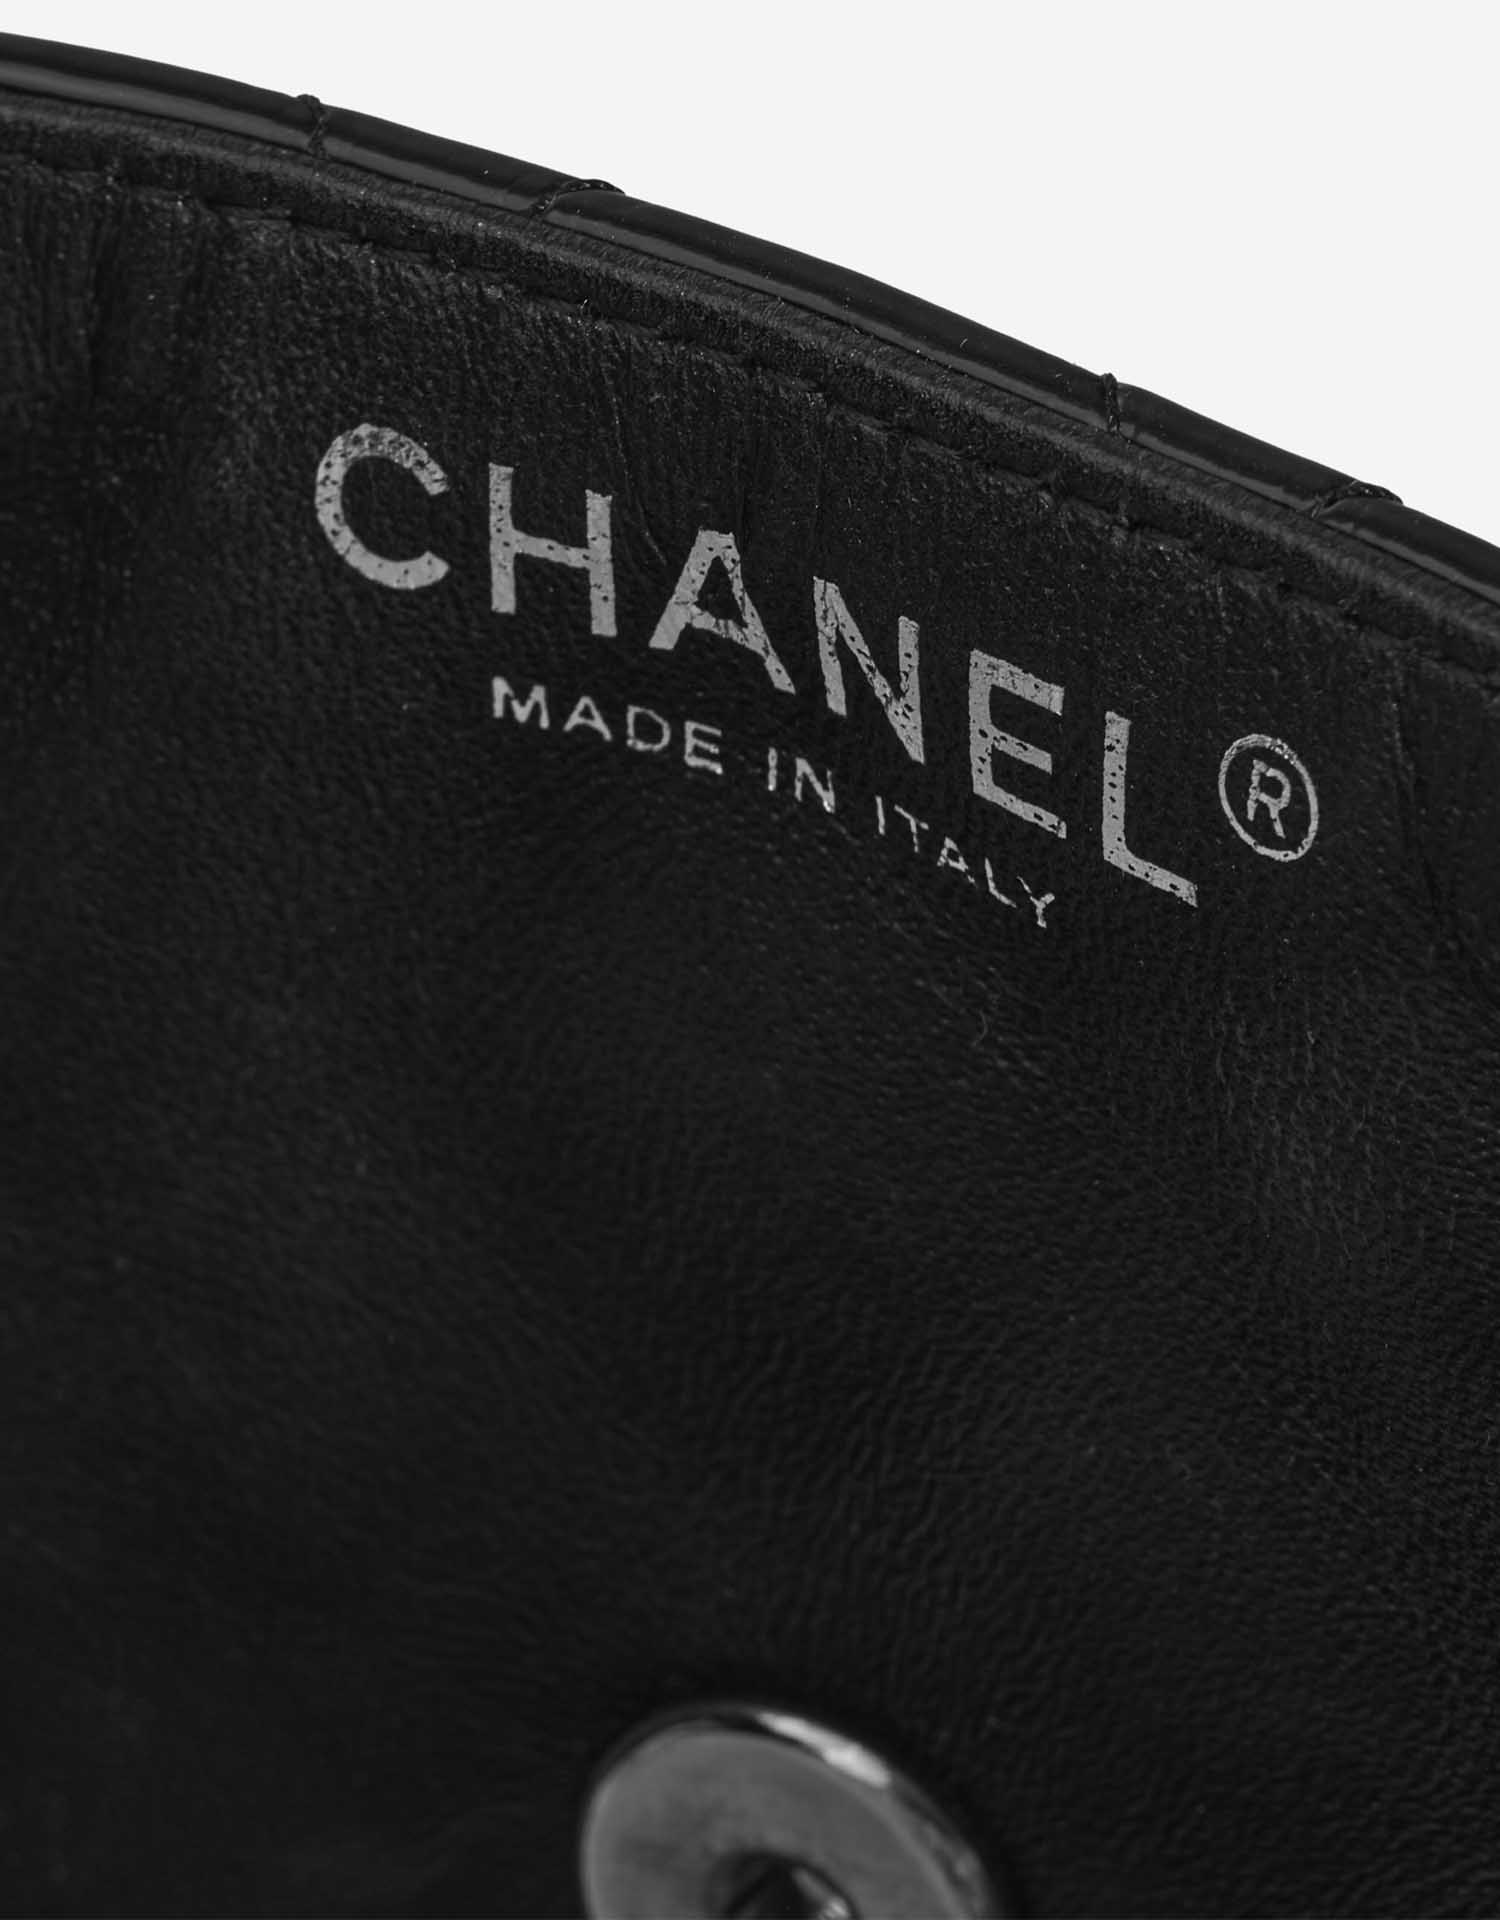 Chanel Timeless Medium Schwarz Logo | Verkaufen Sie Ihre Designer-Tasche auf Saclab.com